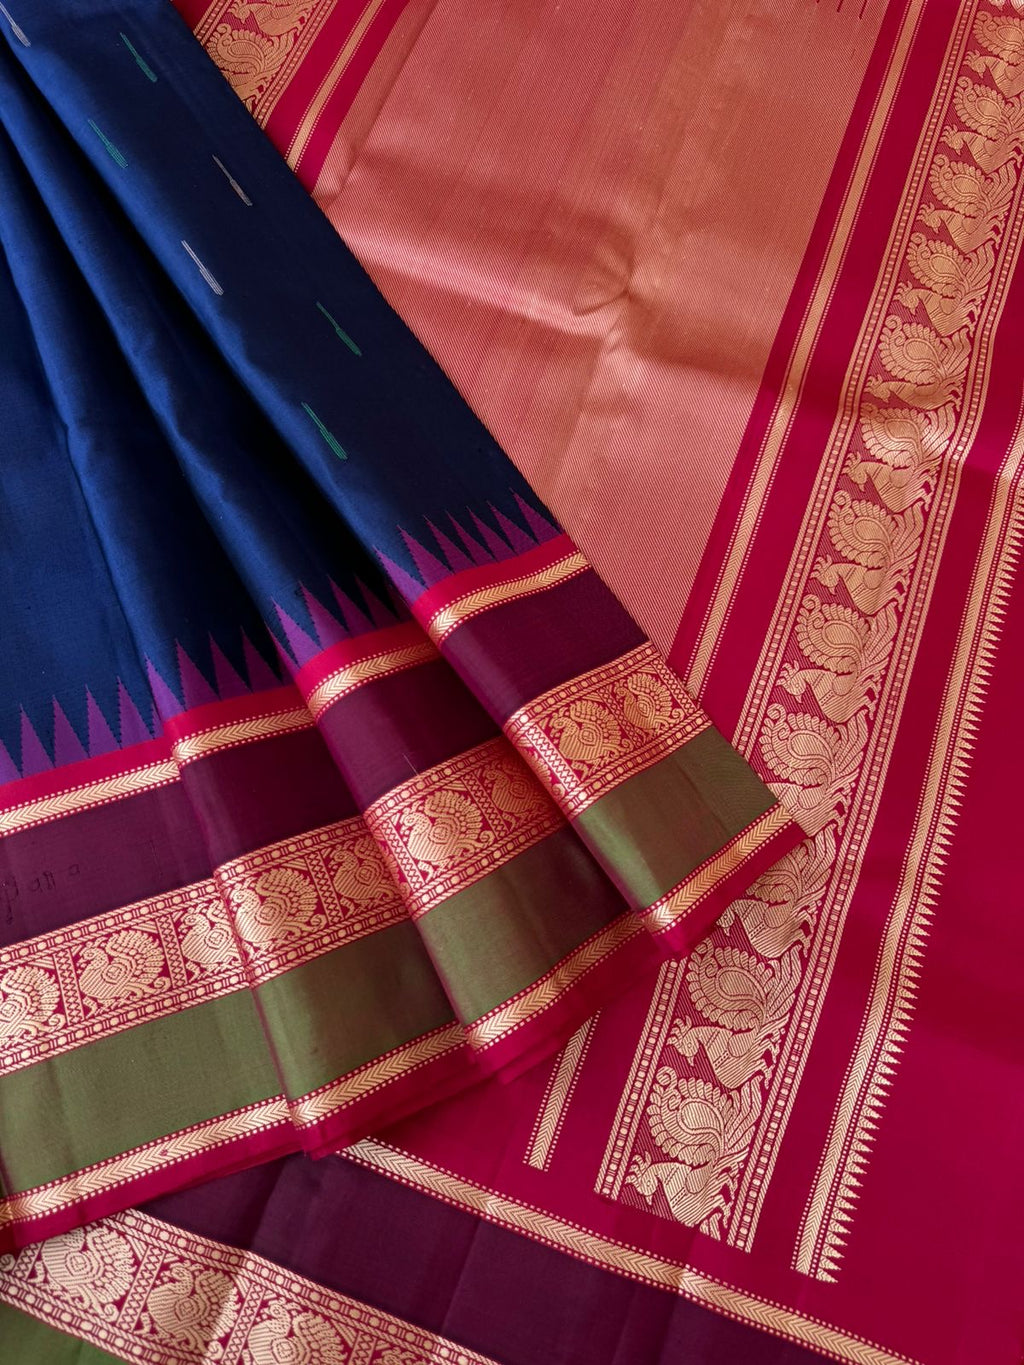 Silk Play on No Zari Kanchivaram - deep dark navy blue and kum kum red pink rain drops woven buttas